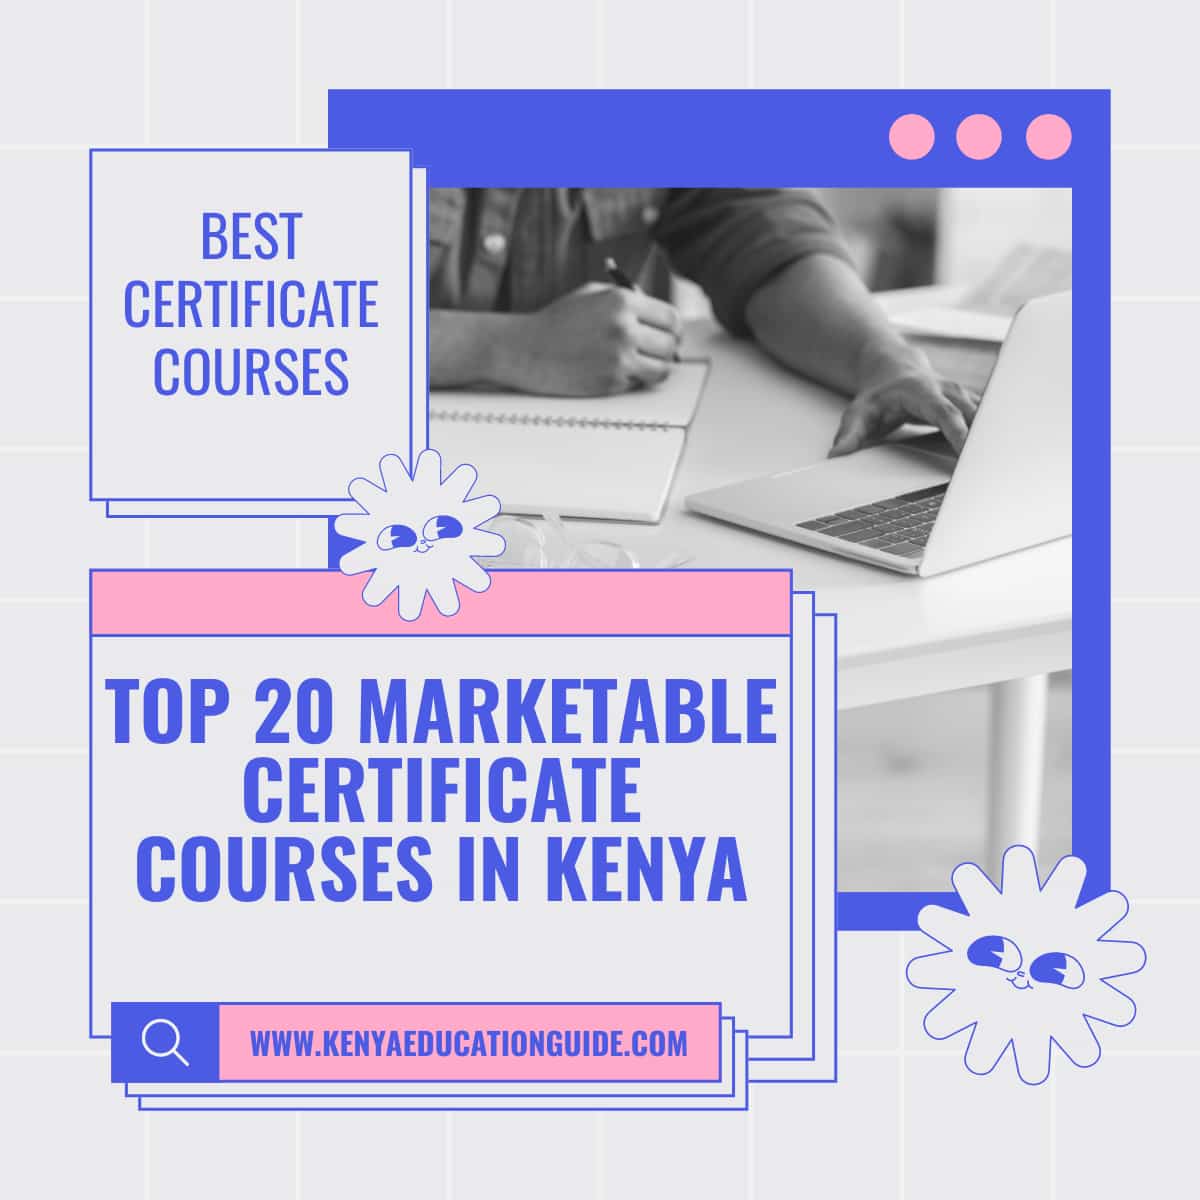 Top 20 Marketable Certificate Courses in Kenya